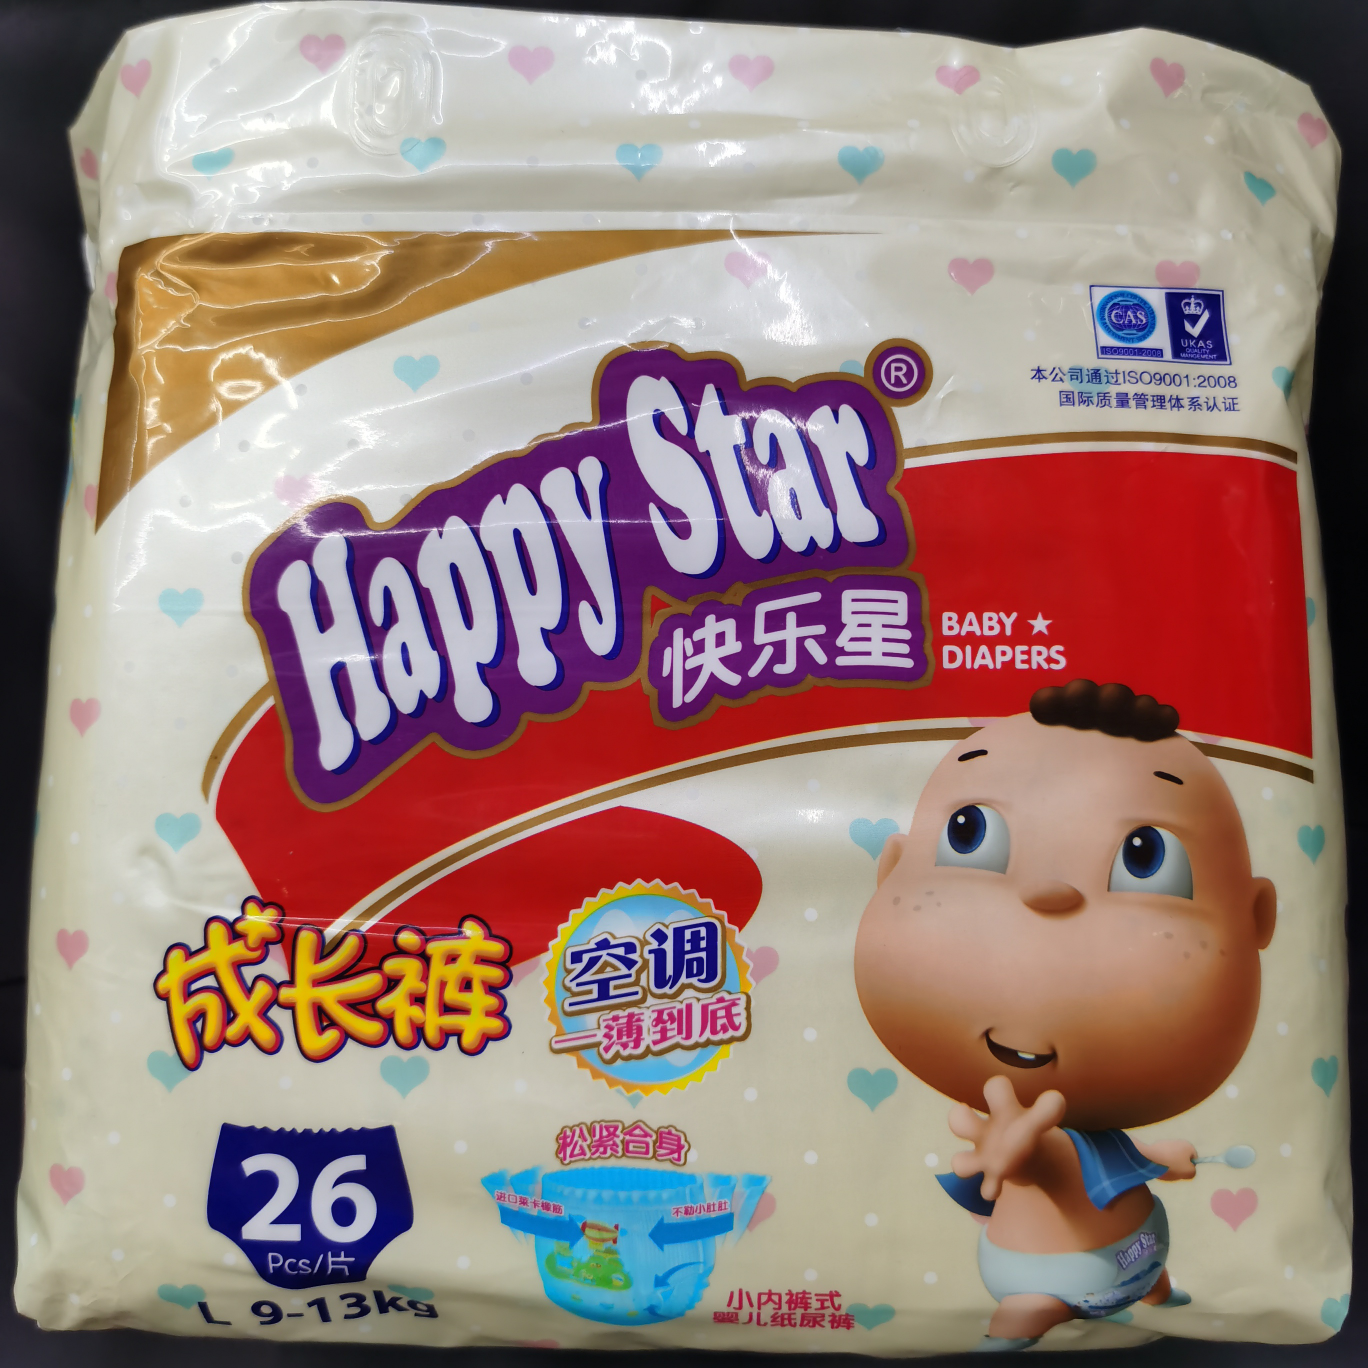 happy star成长裤
L码26pcs